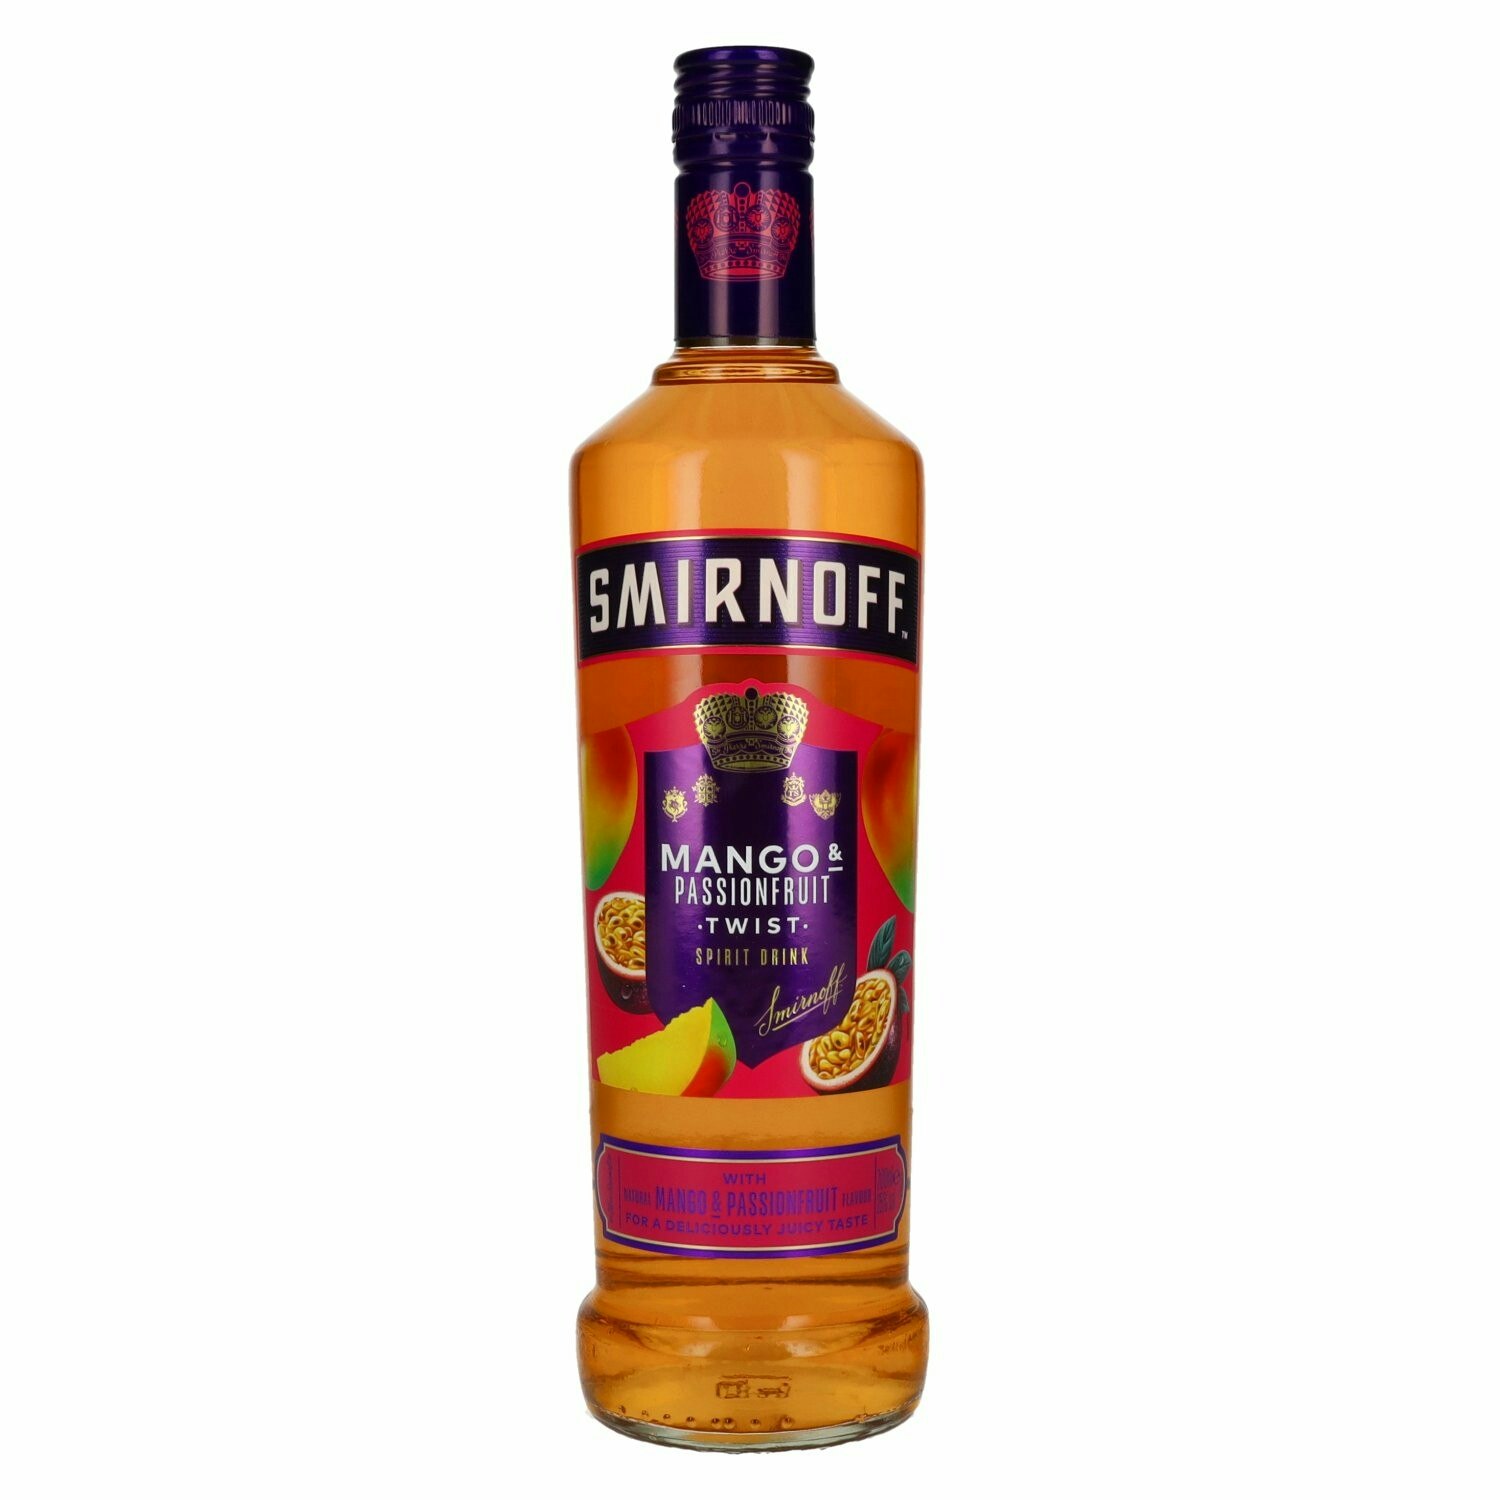 Smirnoff Vodka MANGO & PASSIONFRUIT TWIST Spirit Drink 25% Vol. 0,7l